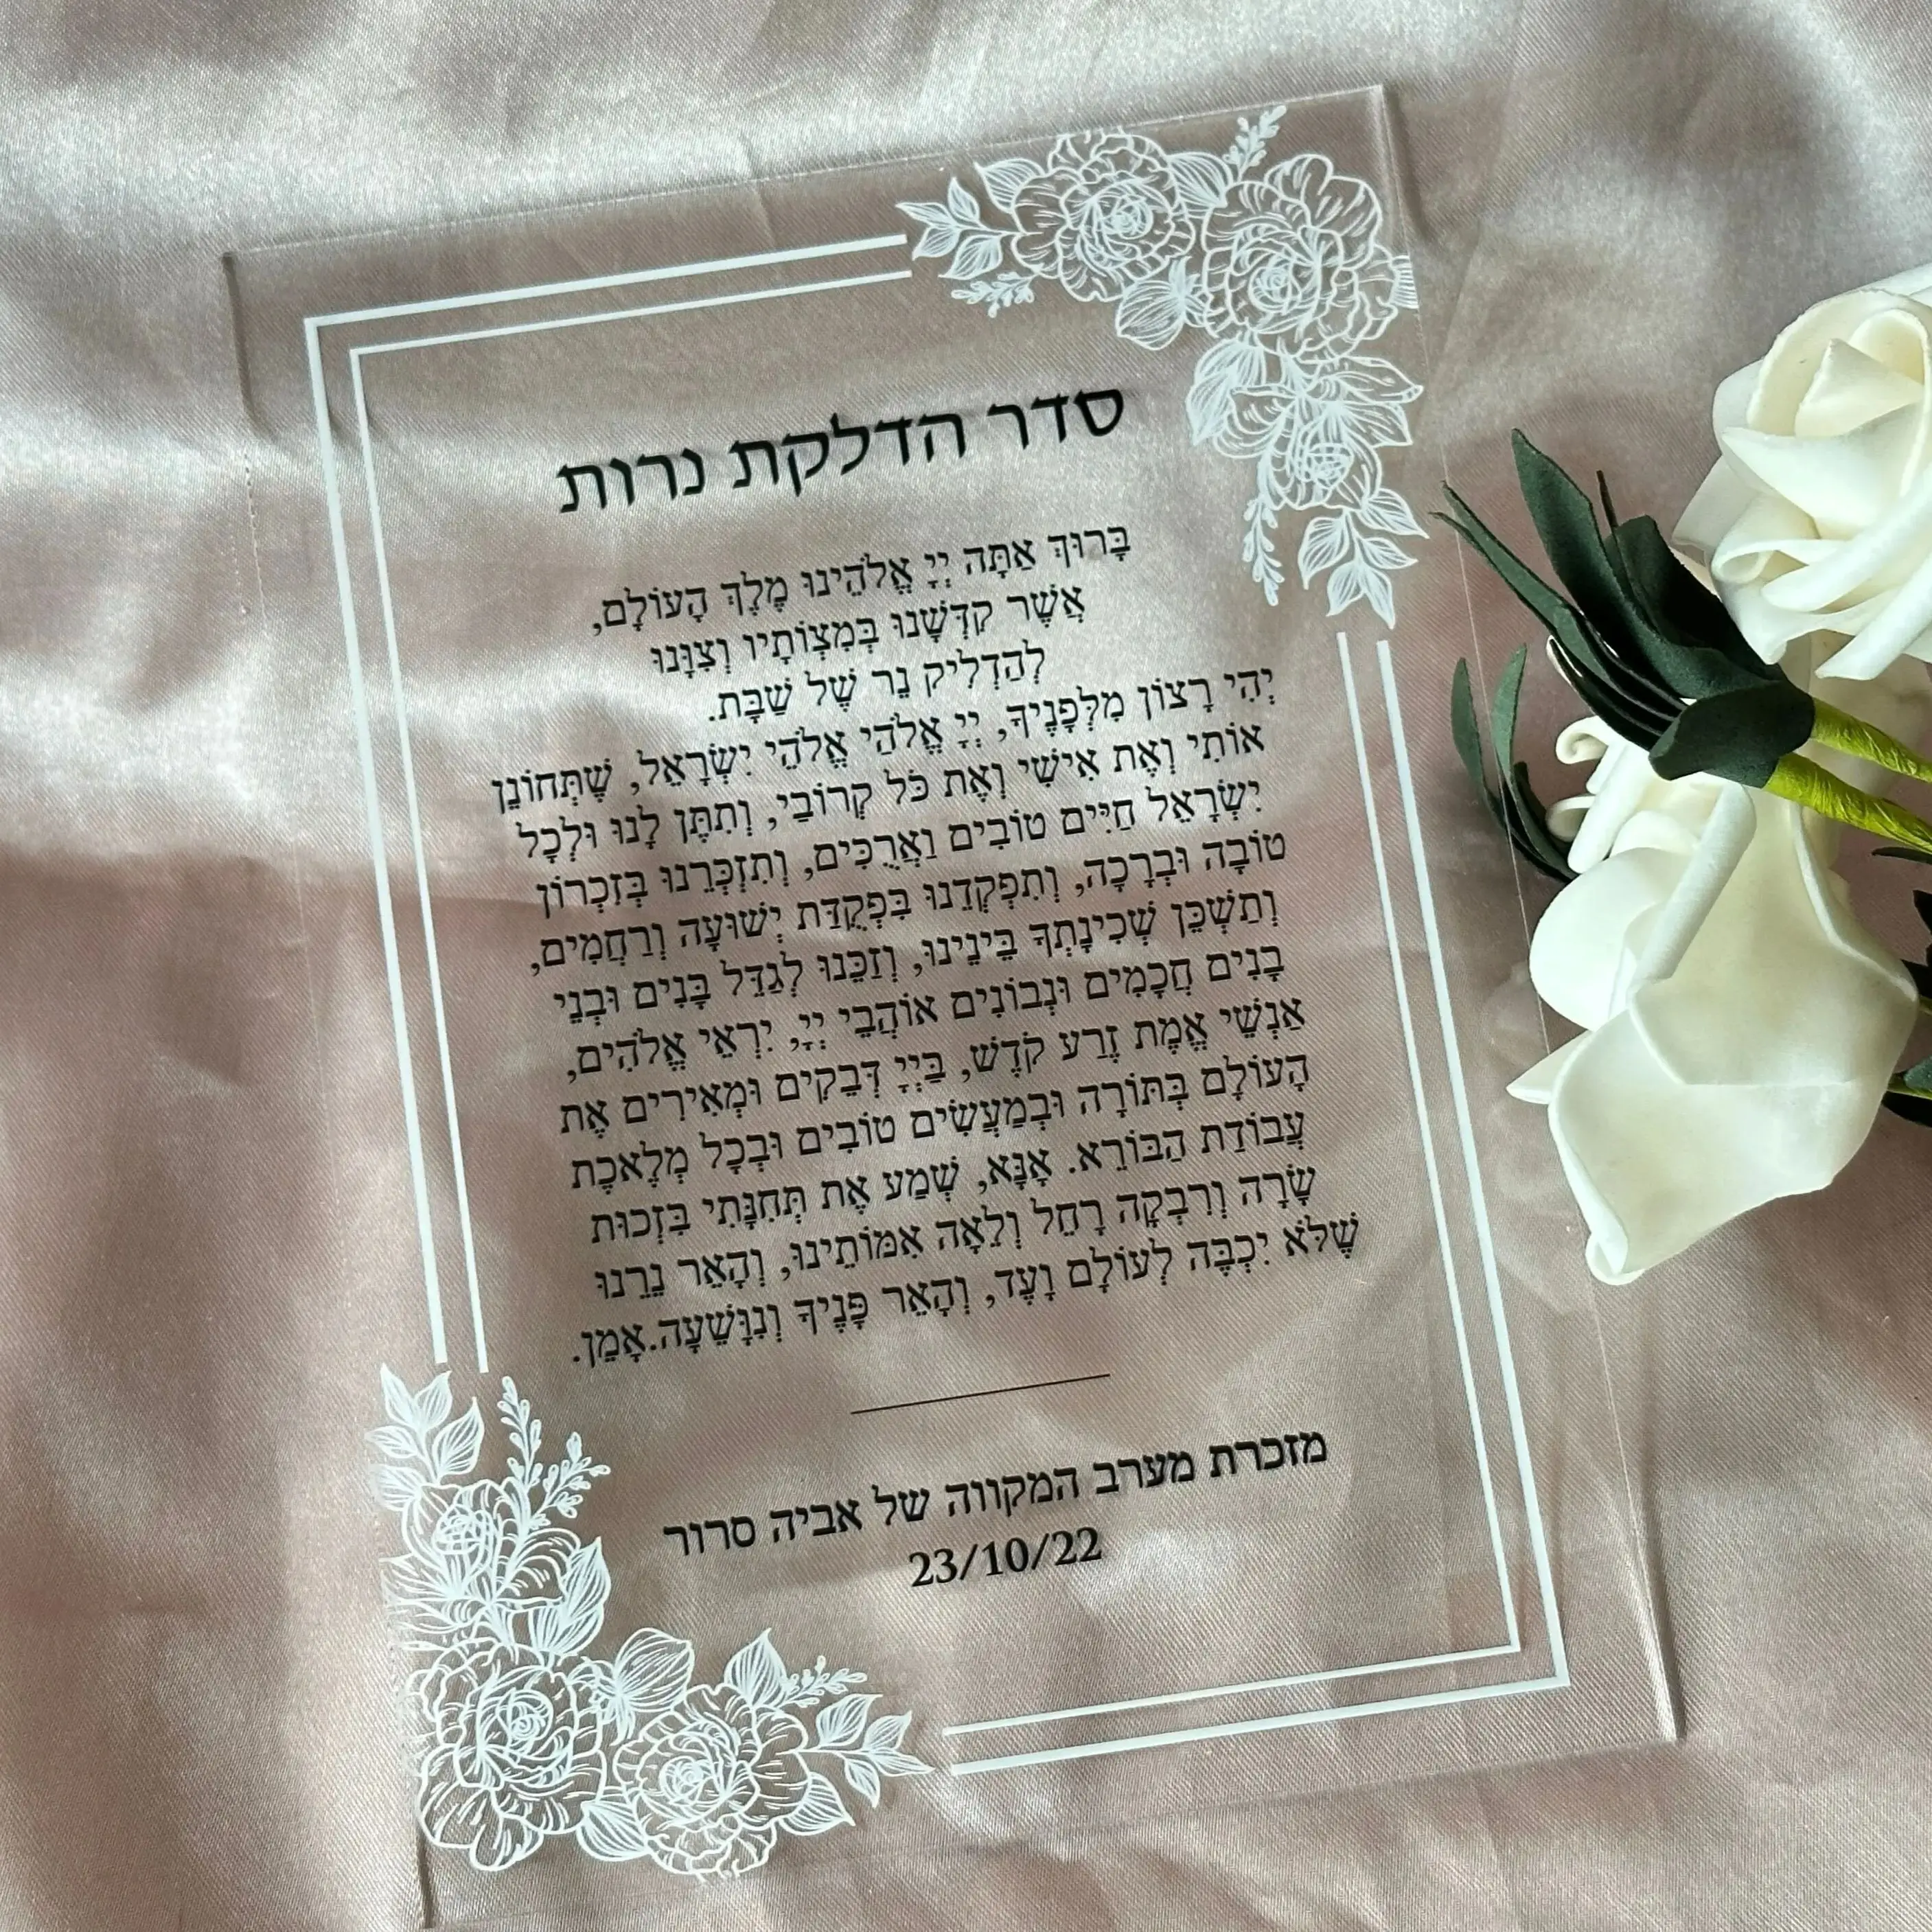 Прозрачное приглашение на свадьбу акриловыми черными буквами, прозрачное приглашение на благословение на иврите, на заказ, персонализированное, 10шт